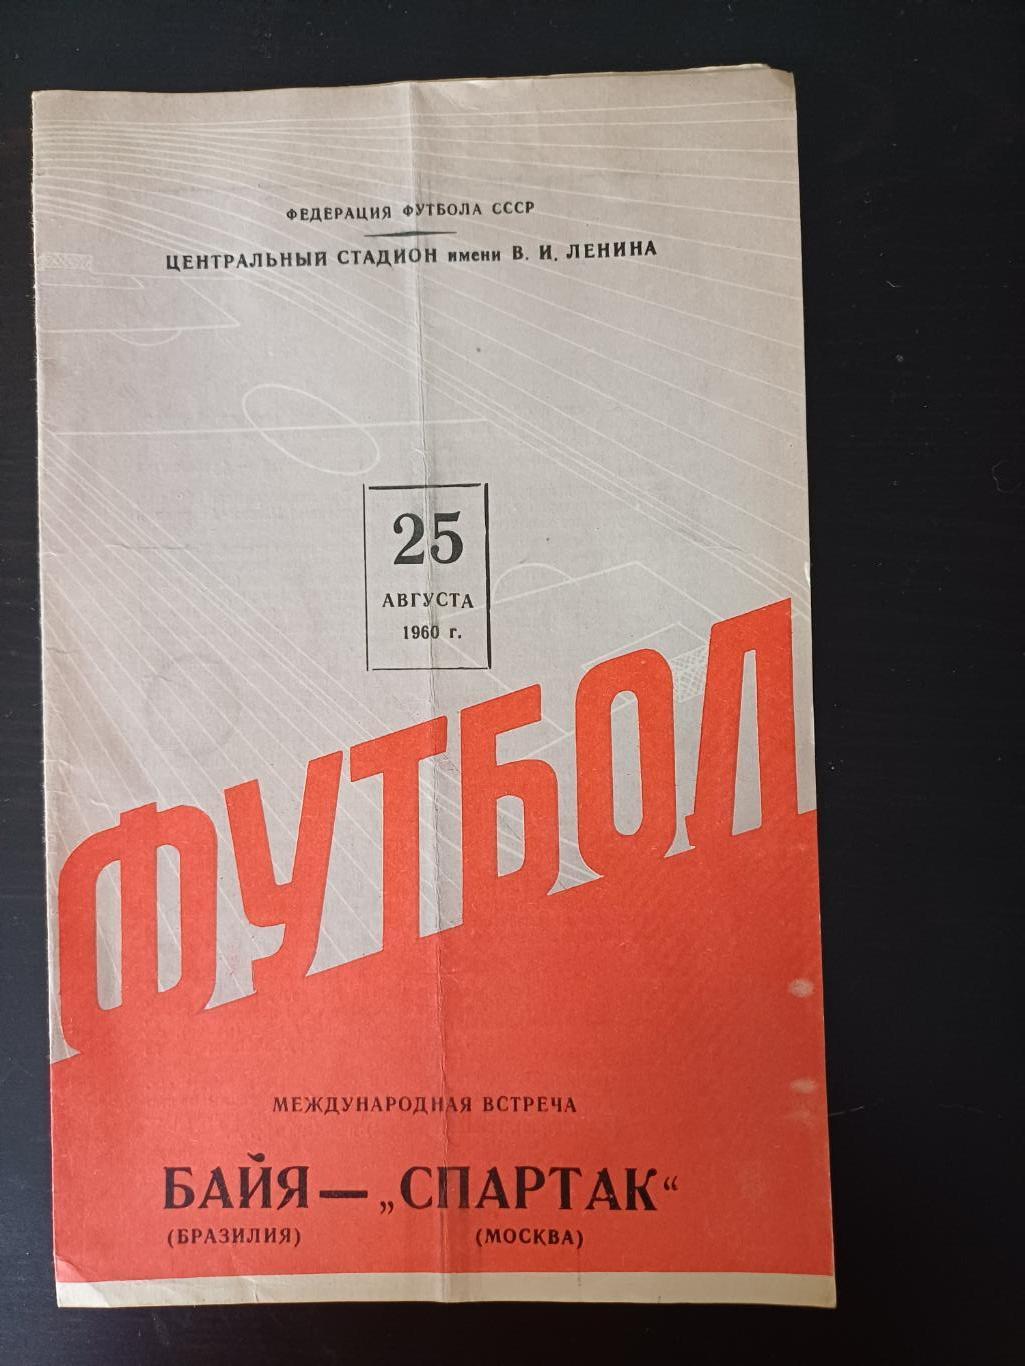 Спартак (Москва) - Байя 1960